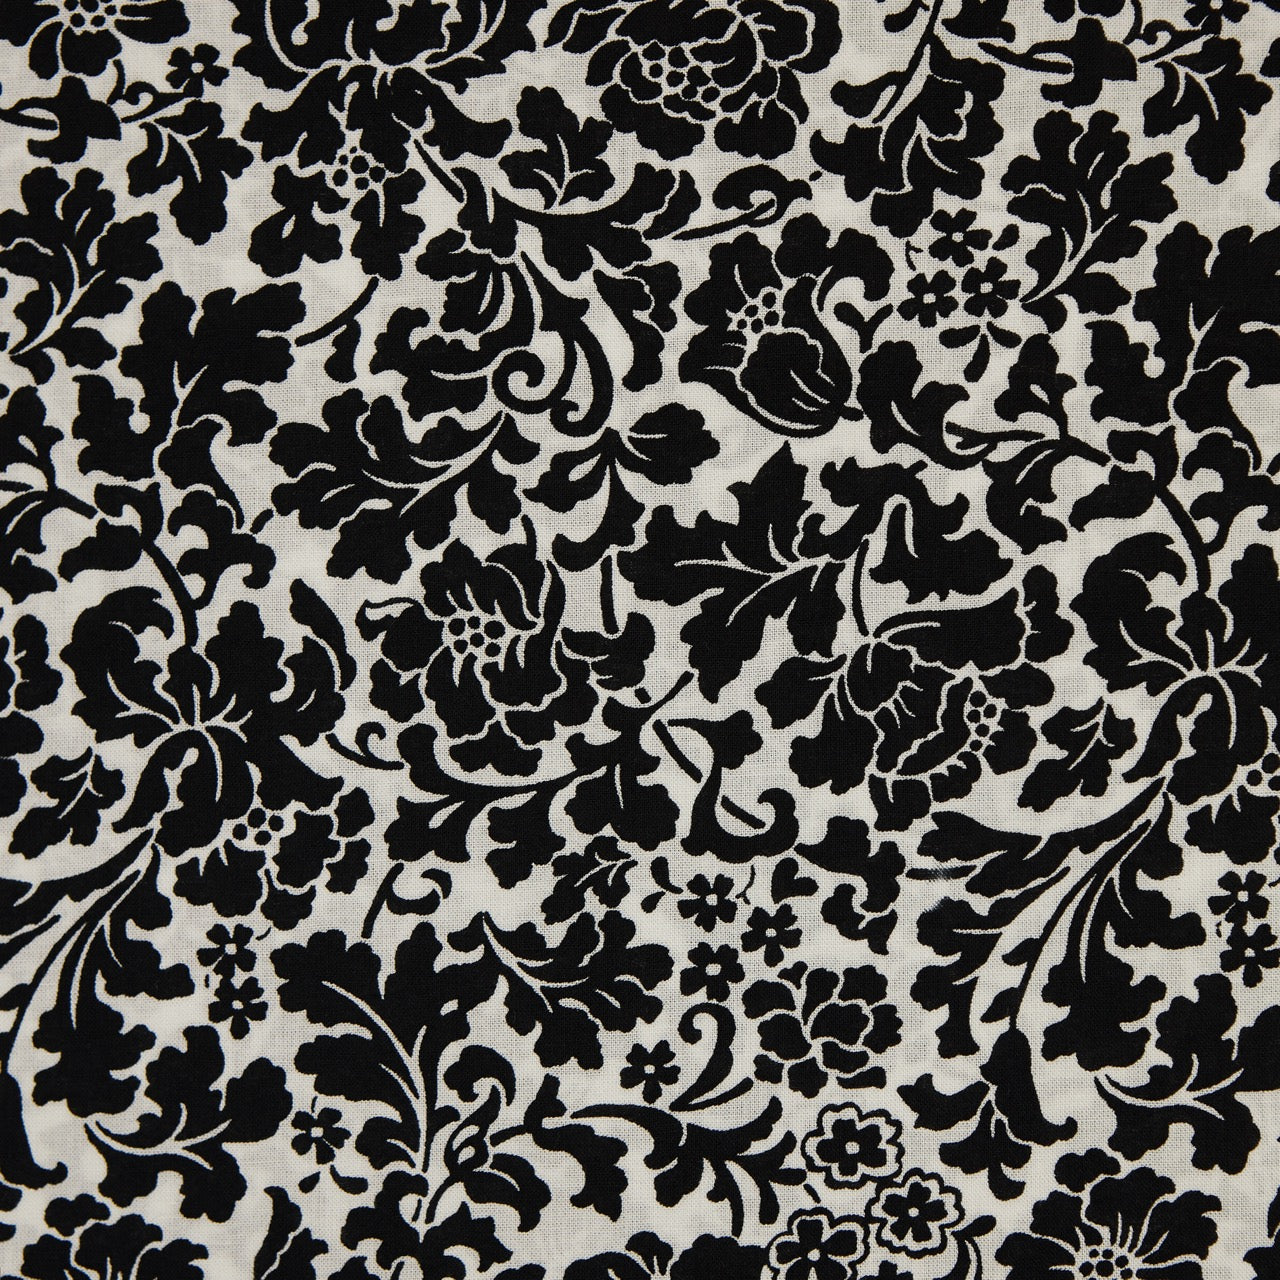 Quilting Cotton - Floral - Black Flourish (detail)